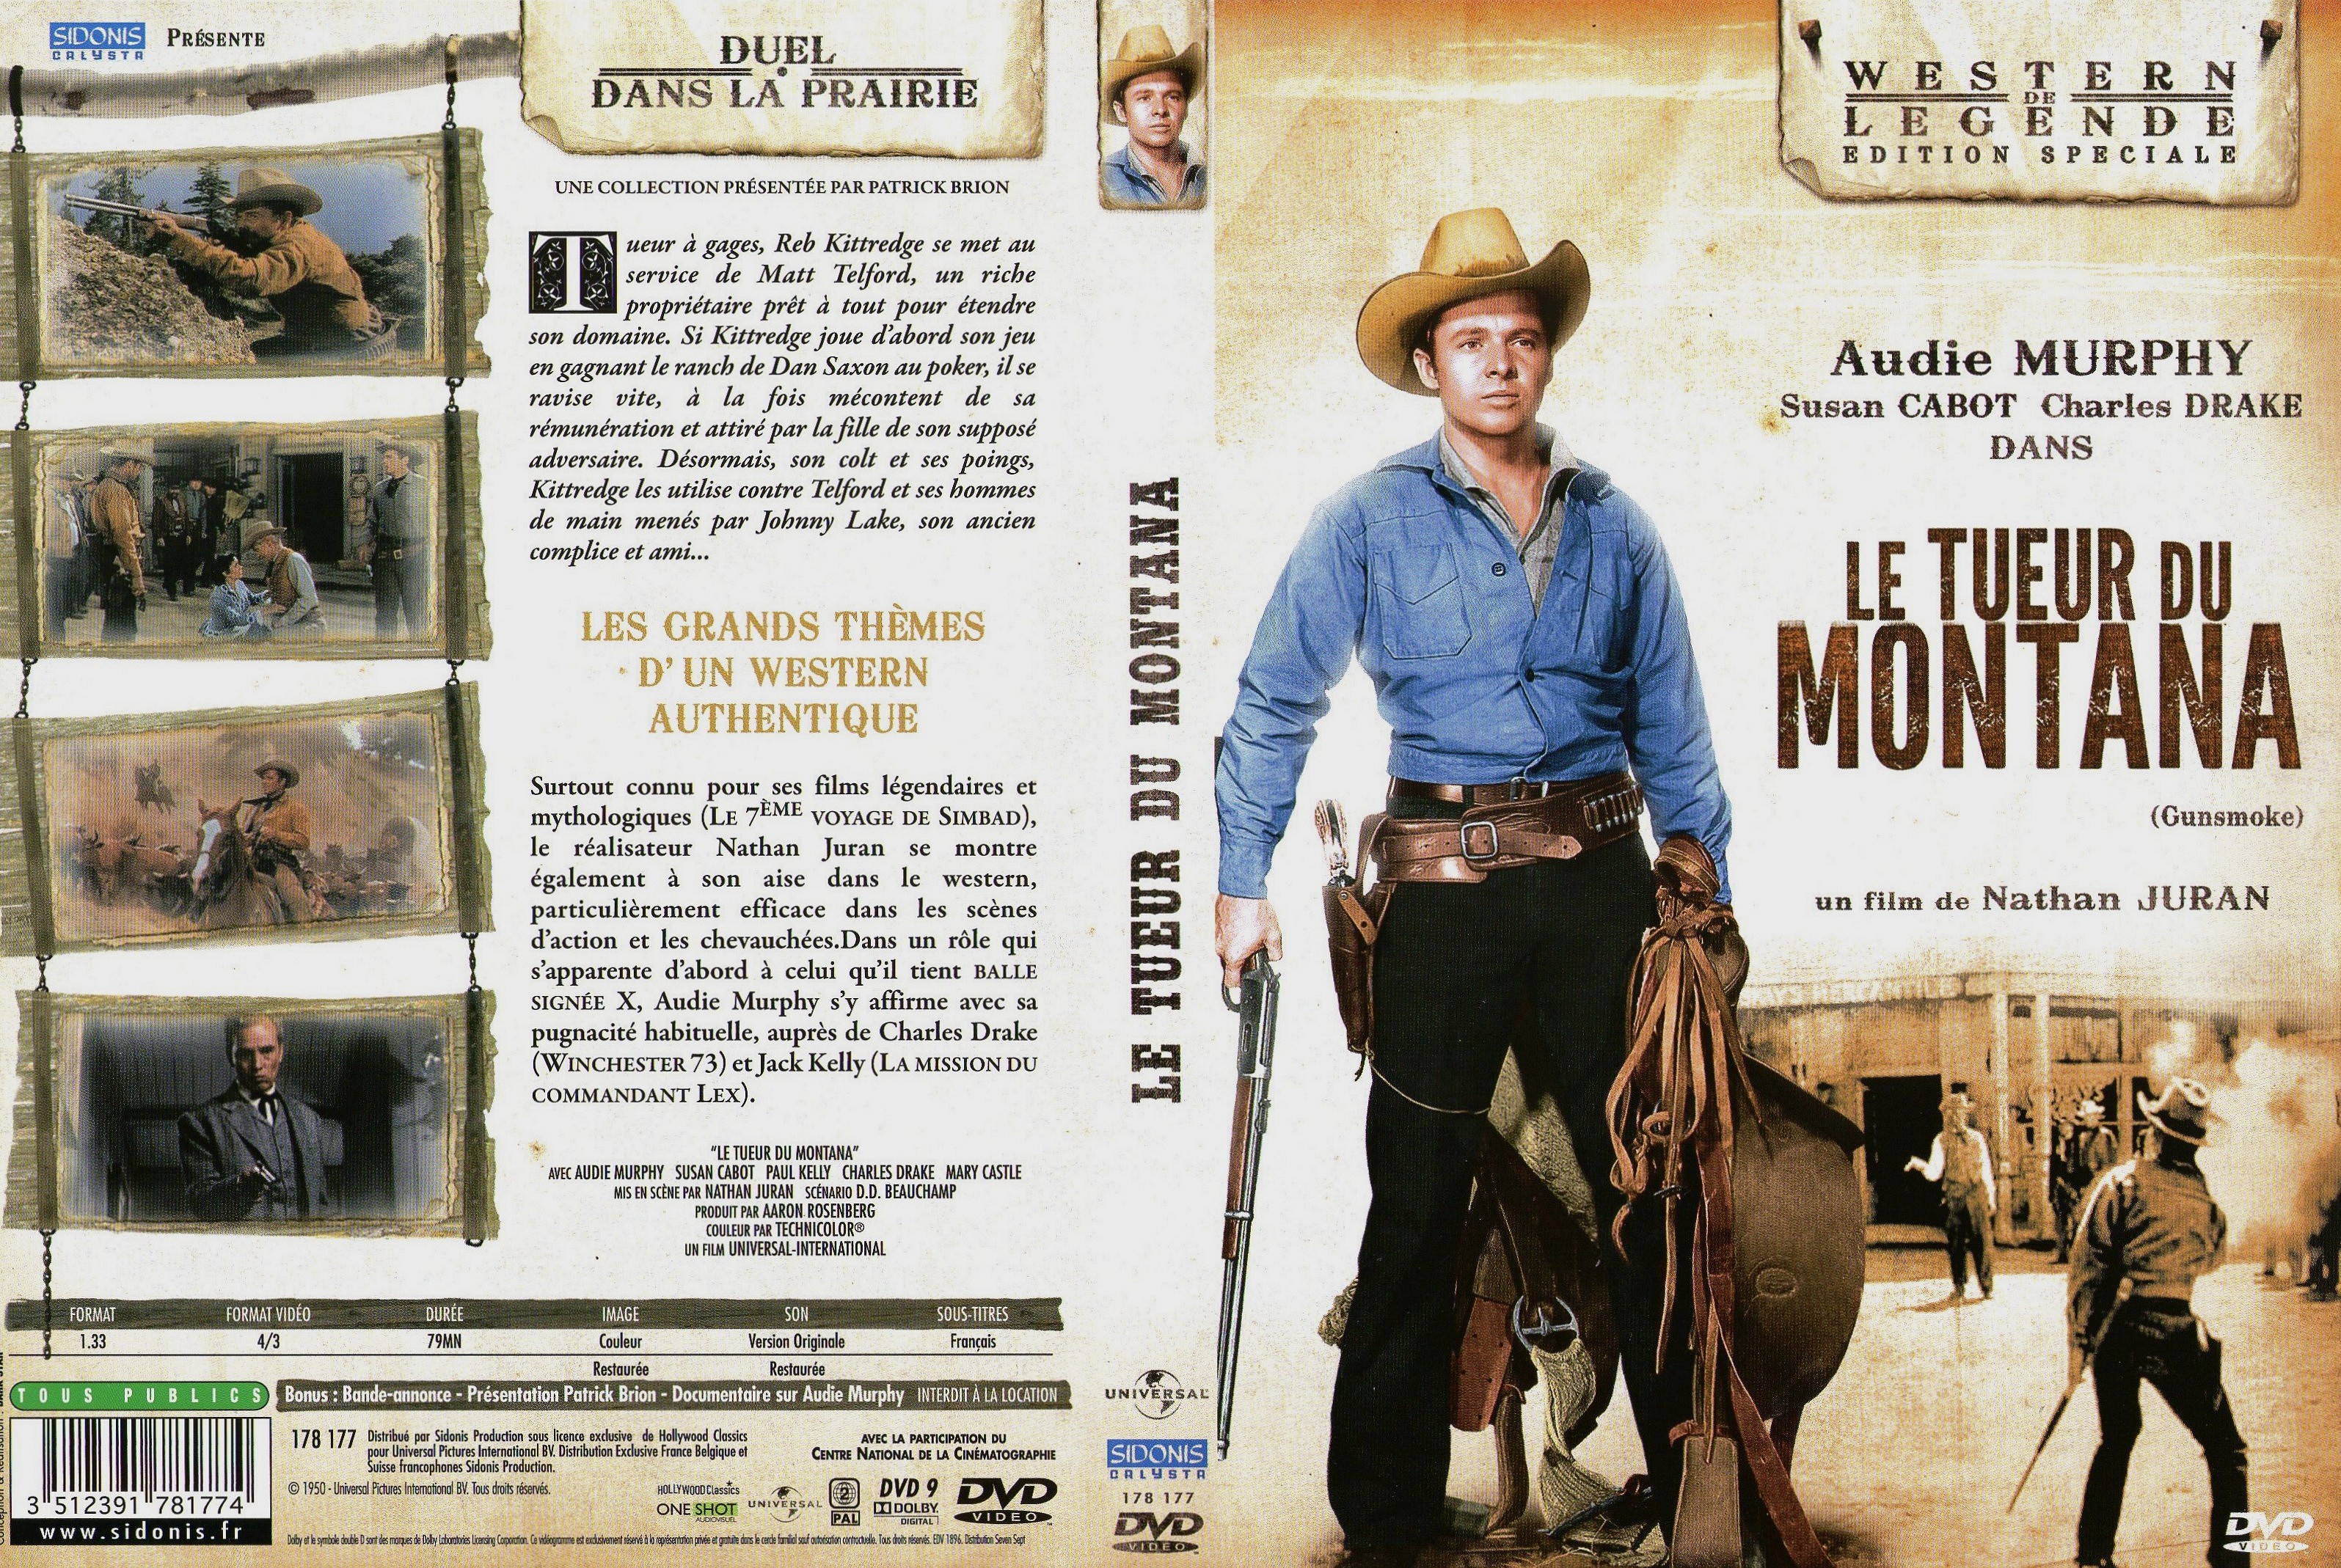 Jaquette DVD Le Tueur du Montana